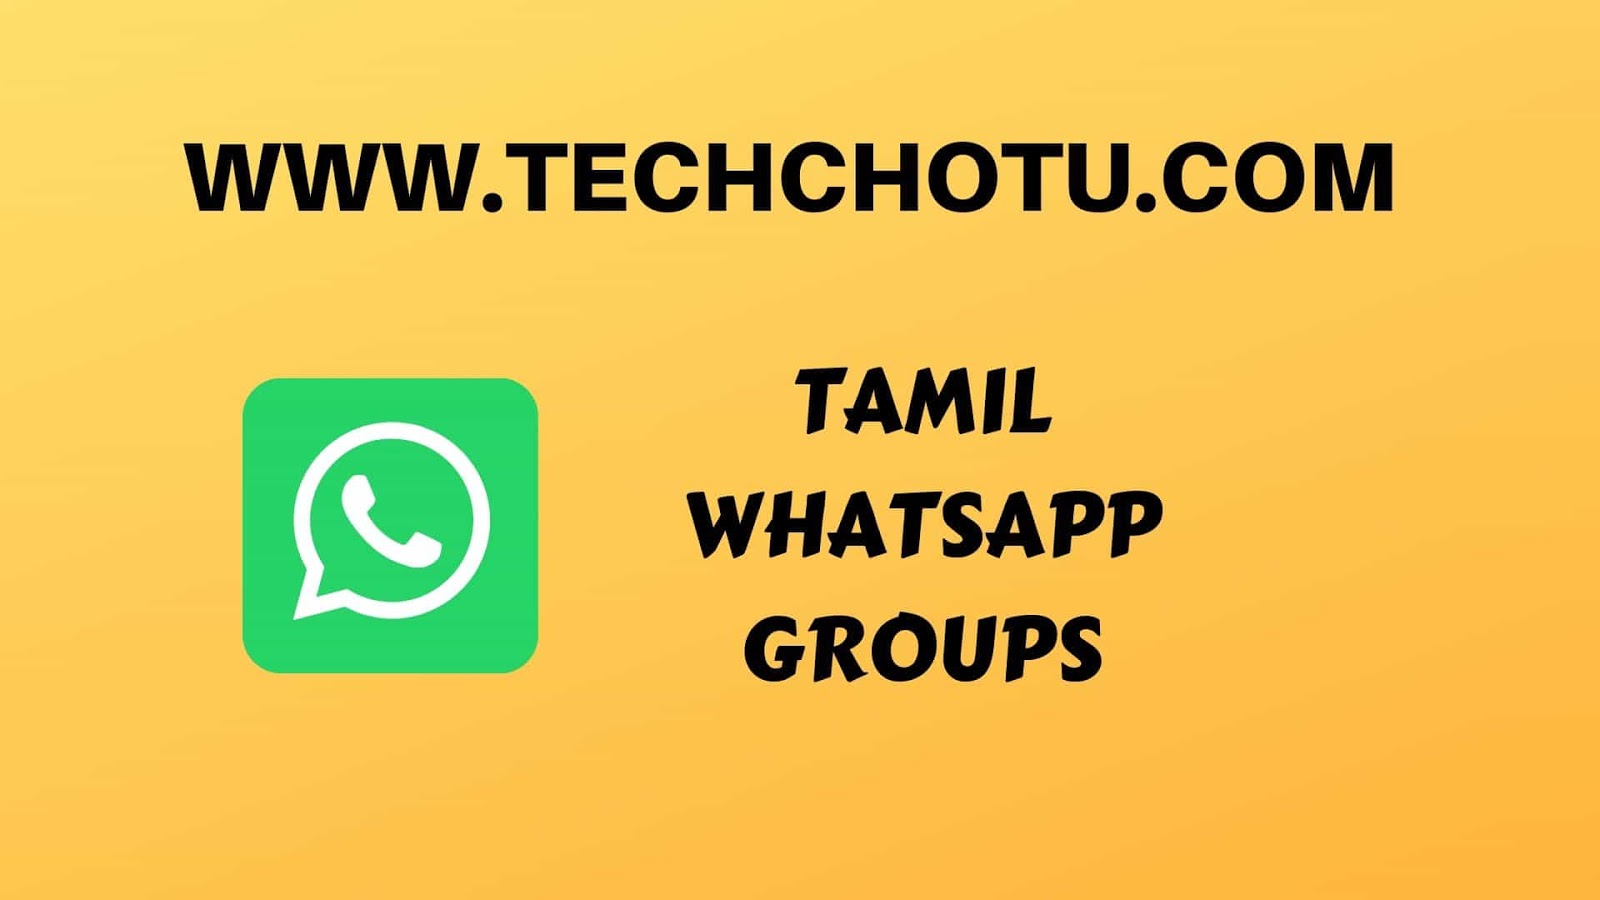 1600px x 900px - TAMIL WHATSAPP GROUP LINKS - TECHCHOTU:WhatsApp Group Links 2020 ...